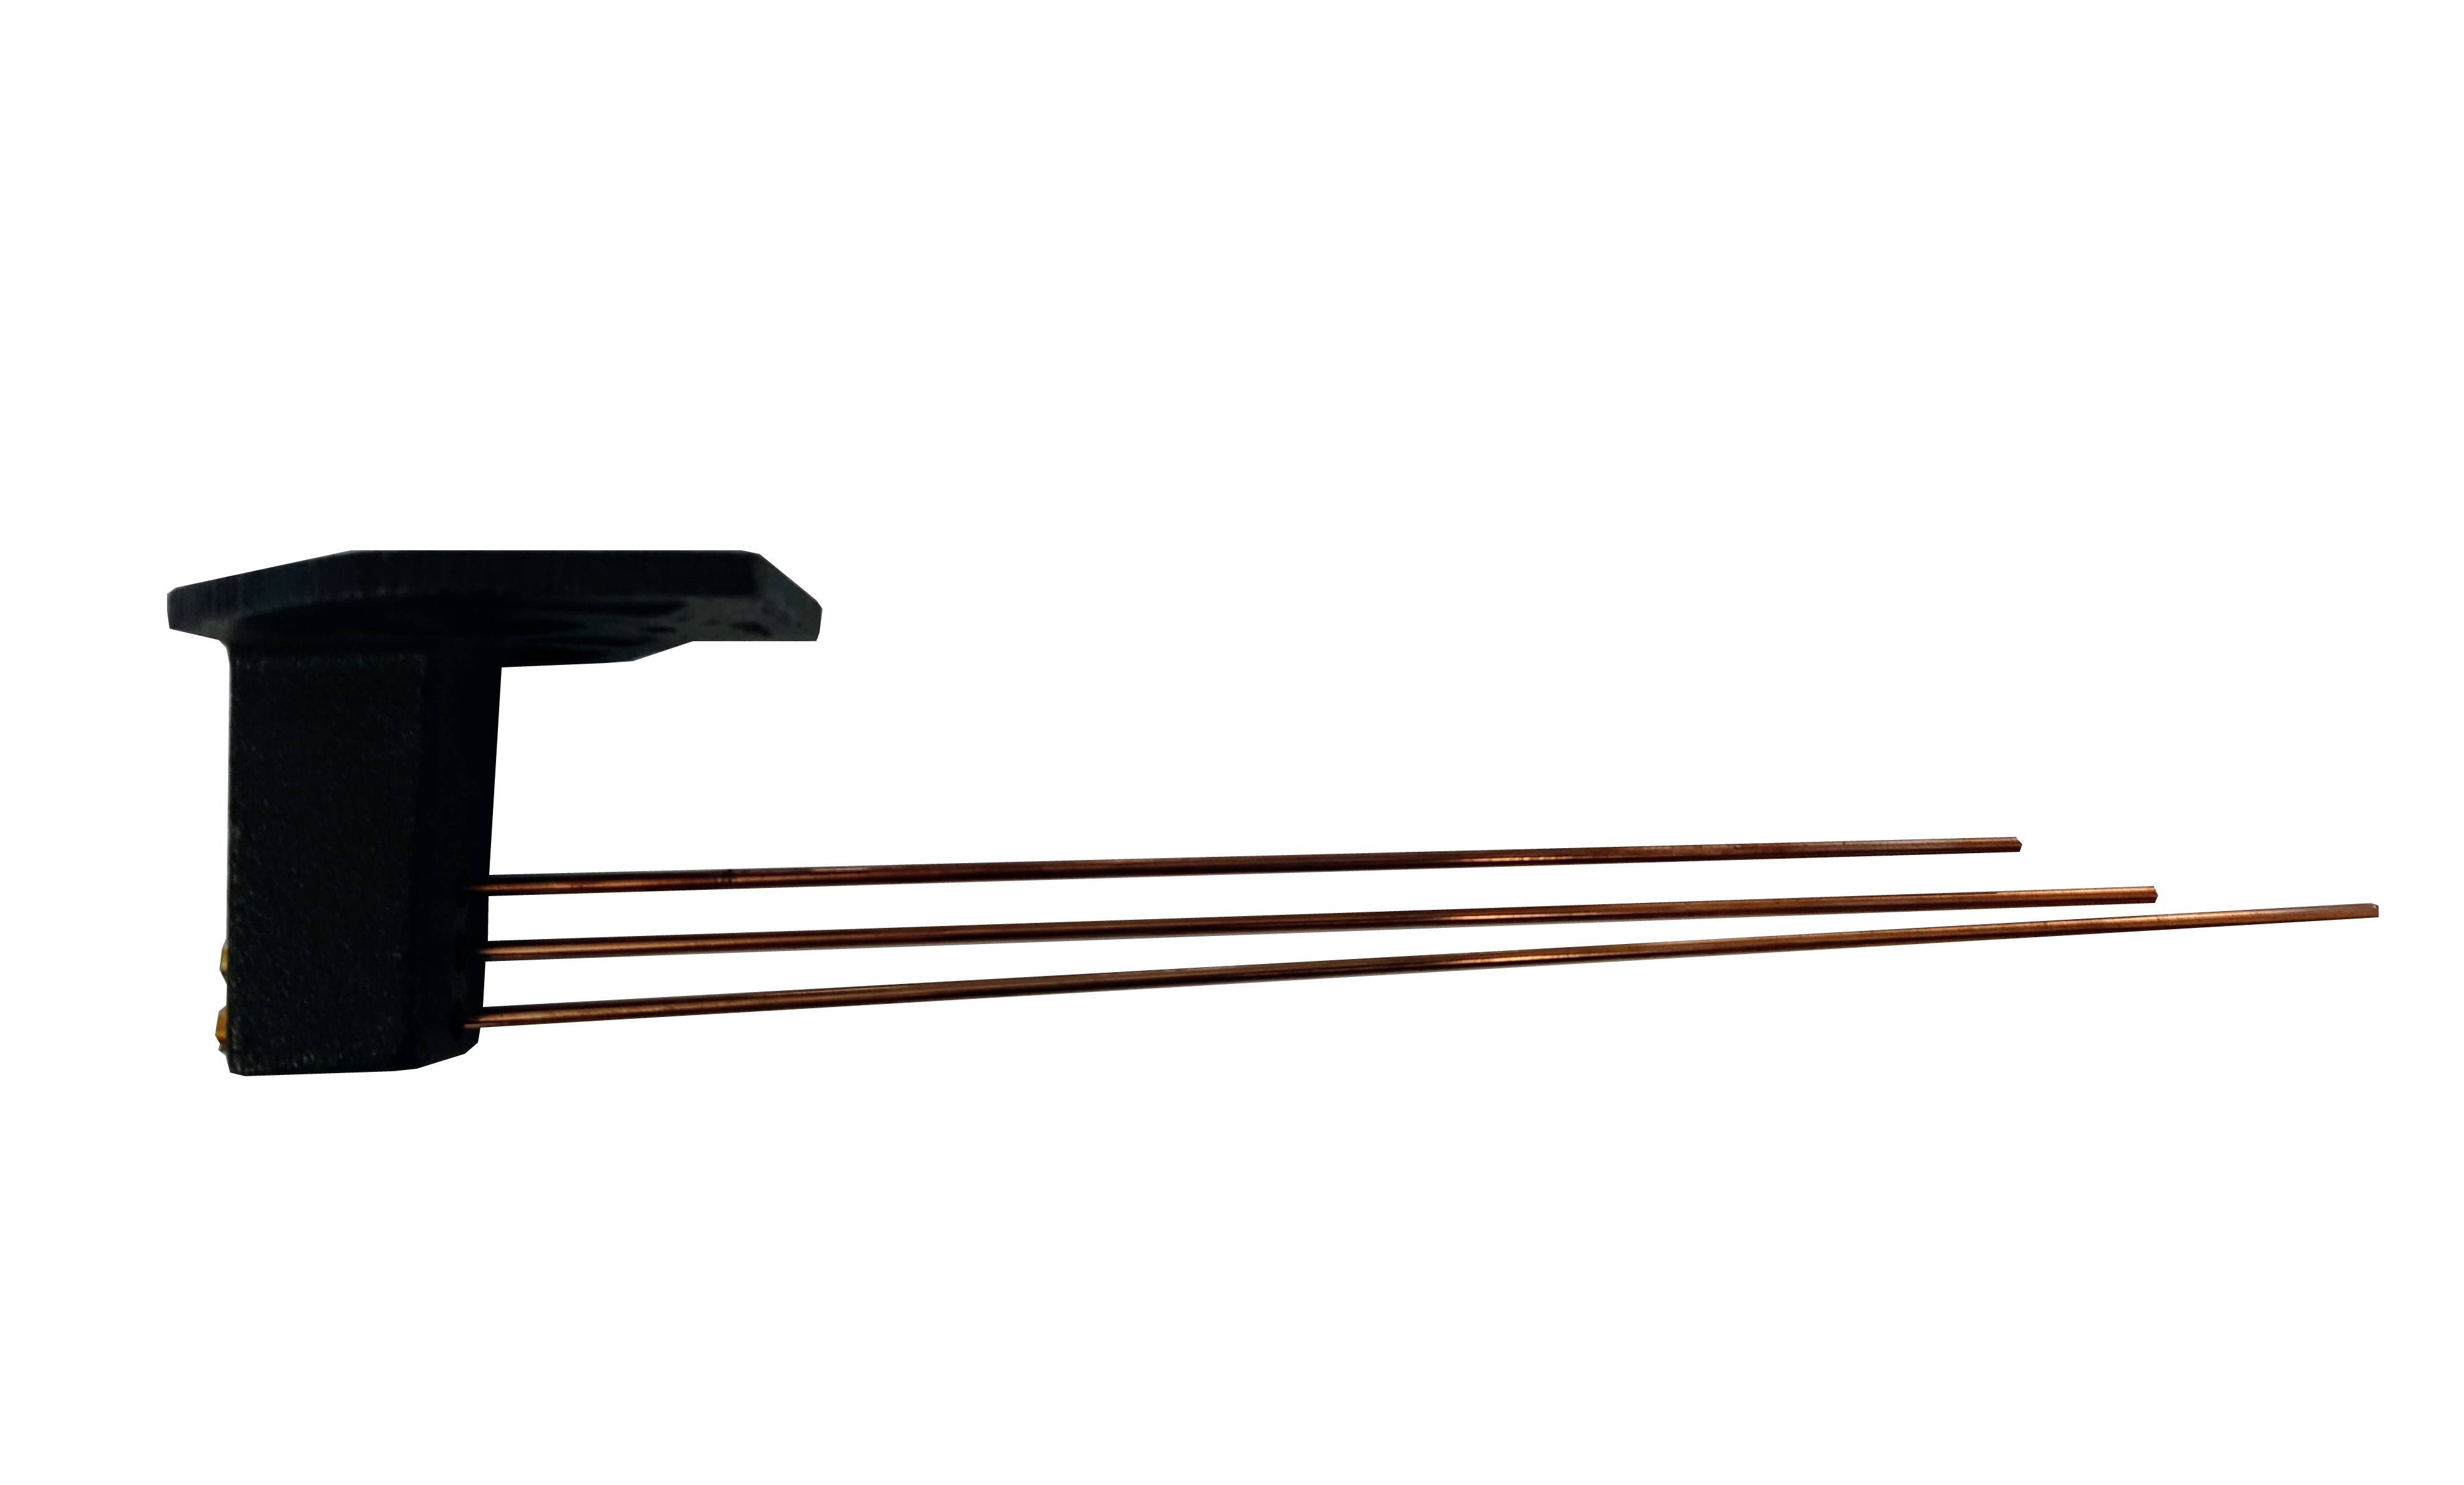 Gong 3 sticks bim-bam 29.50cm